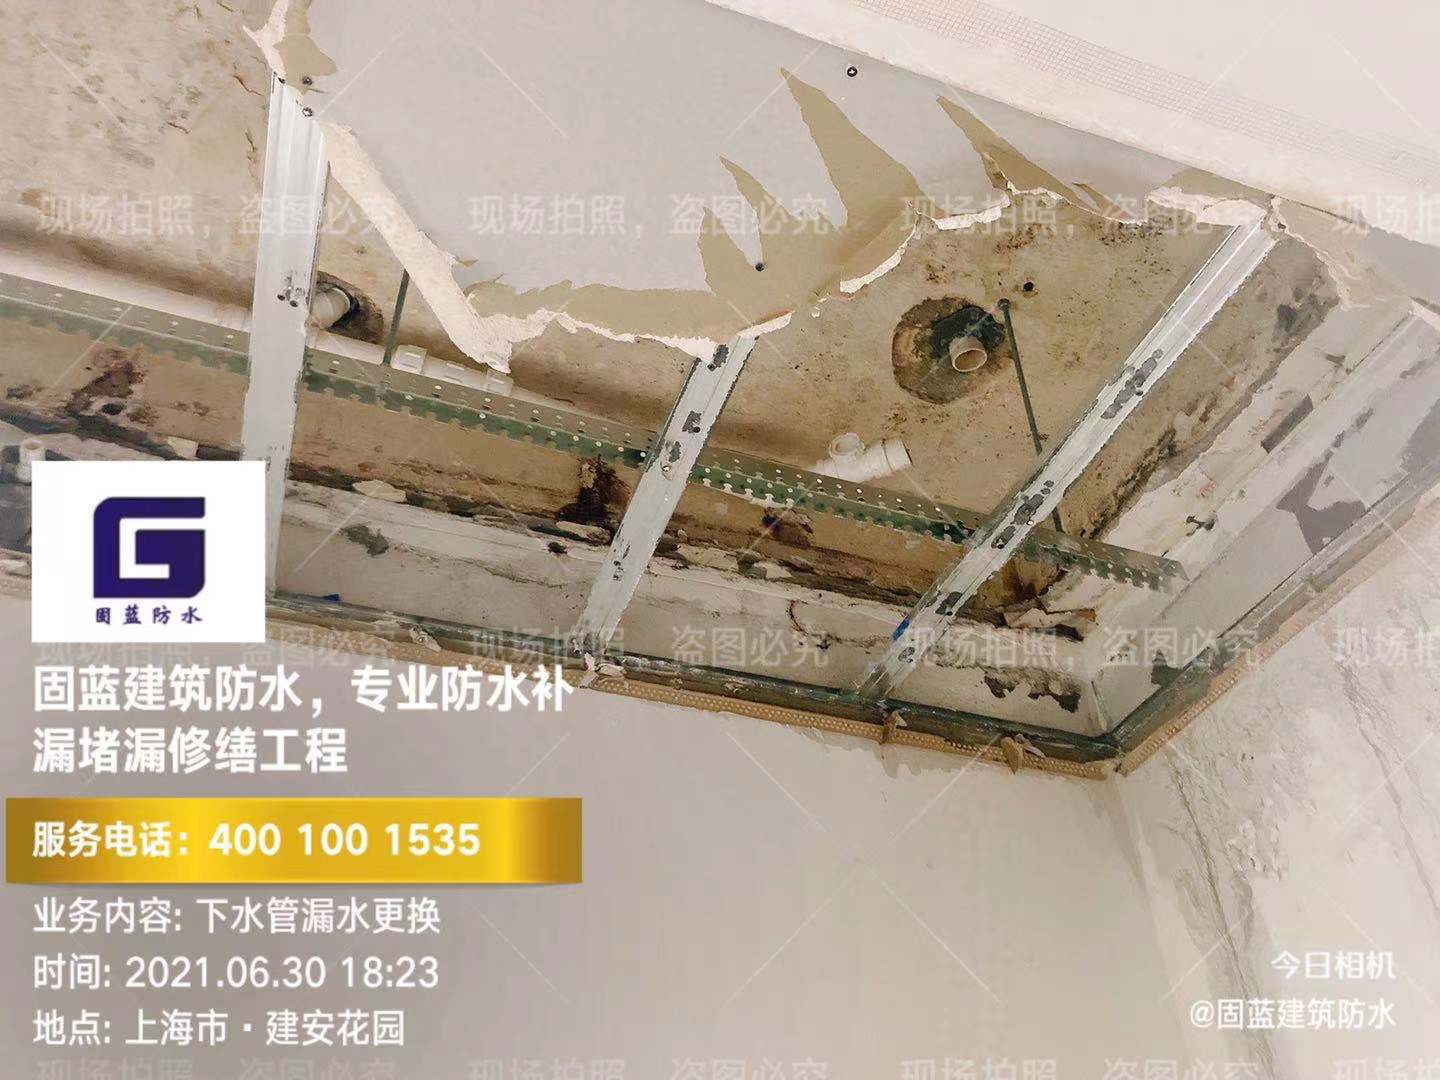 上海固蓝建筑防水工程有限公司